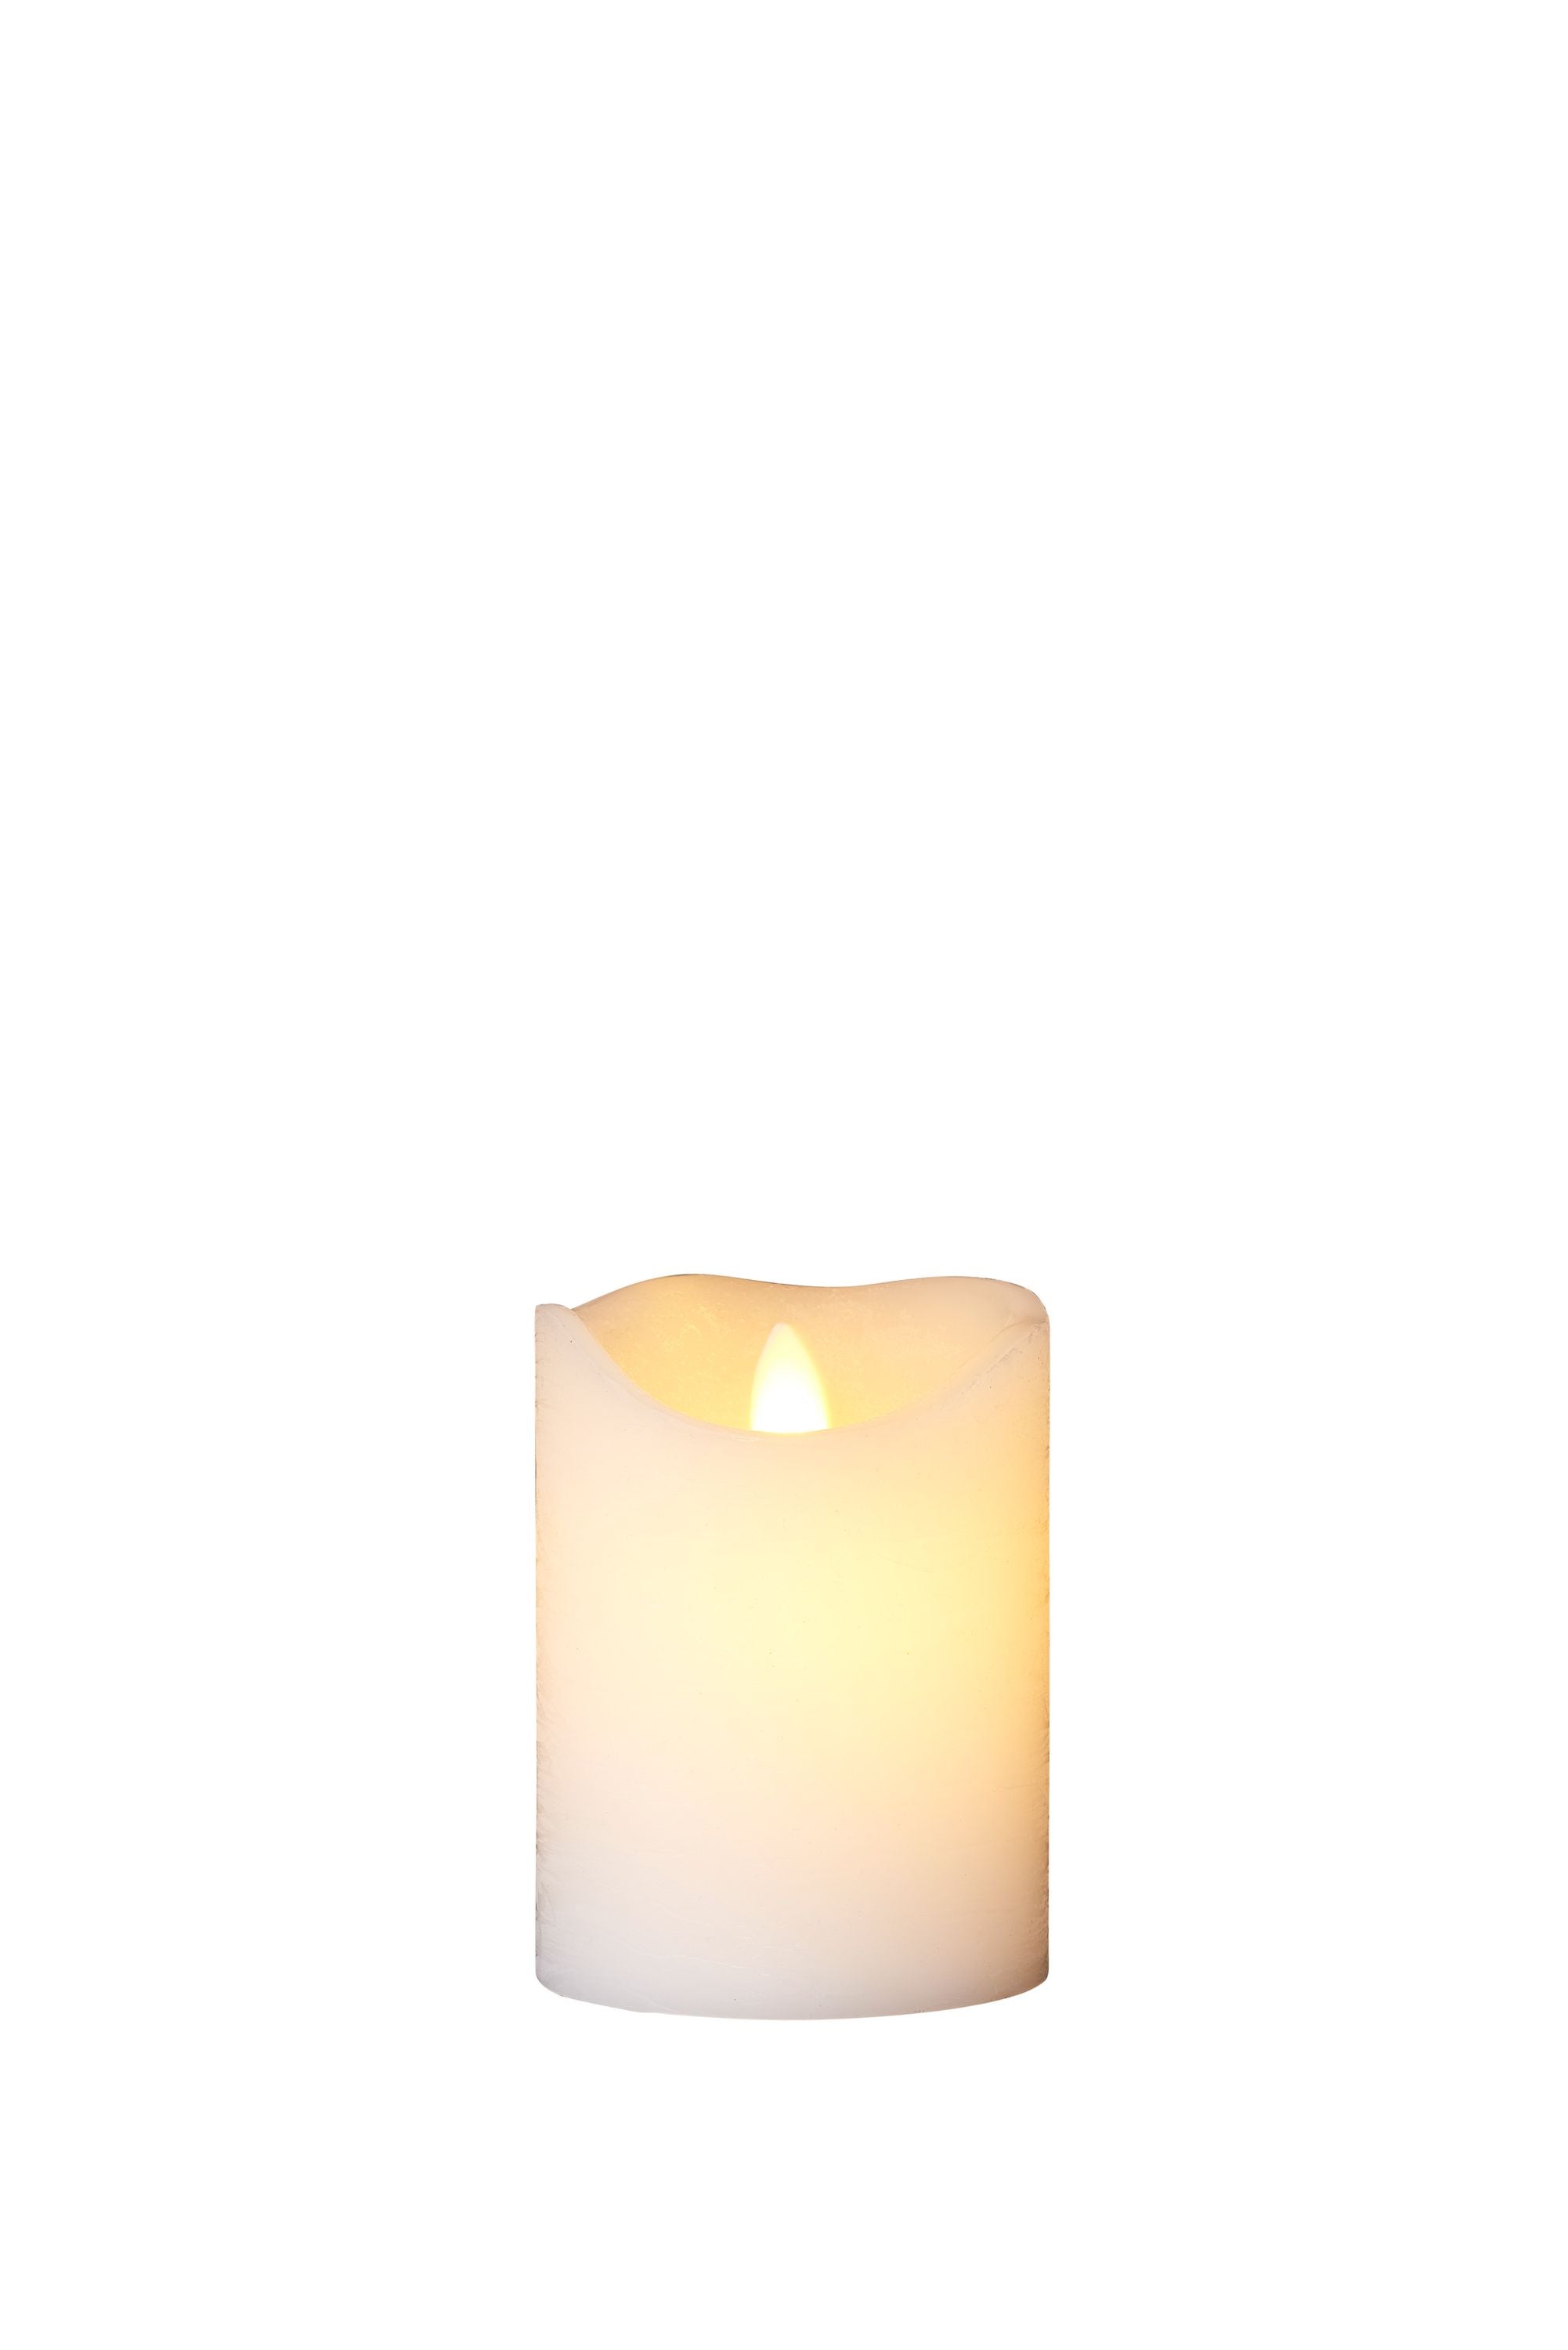 Sirius Sara genopladeligt LED -stearinlys, Ø7,5xH10,5 cm